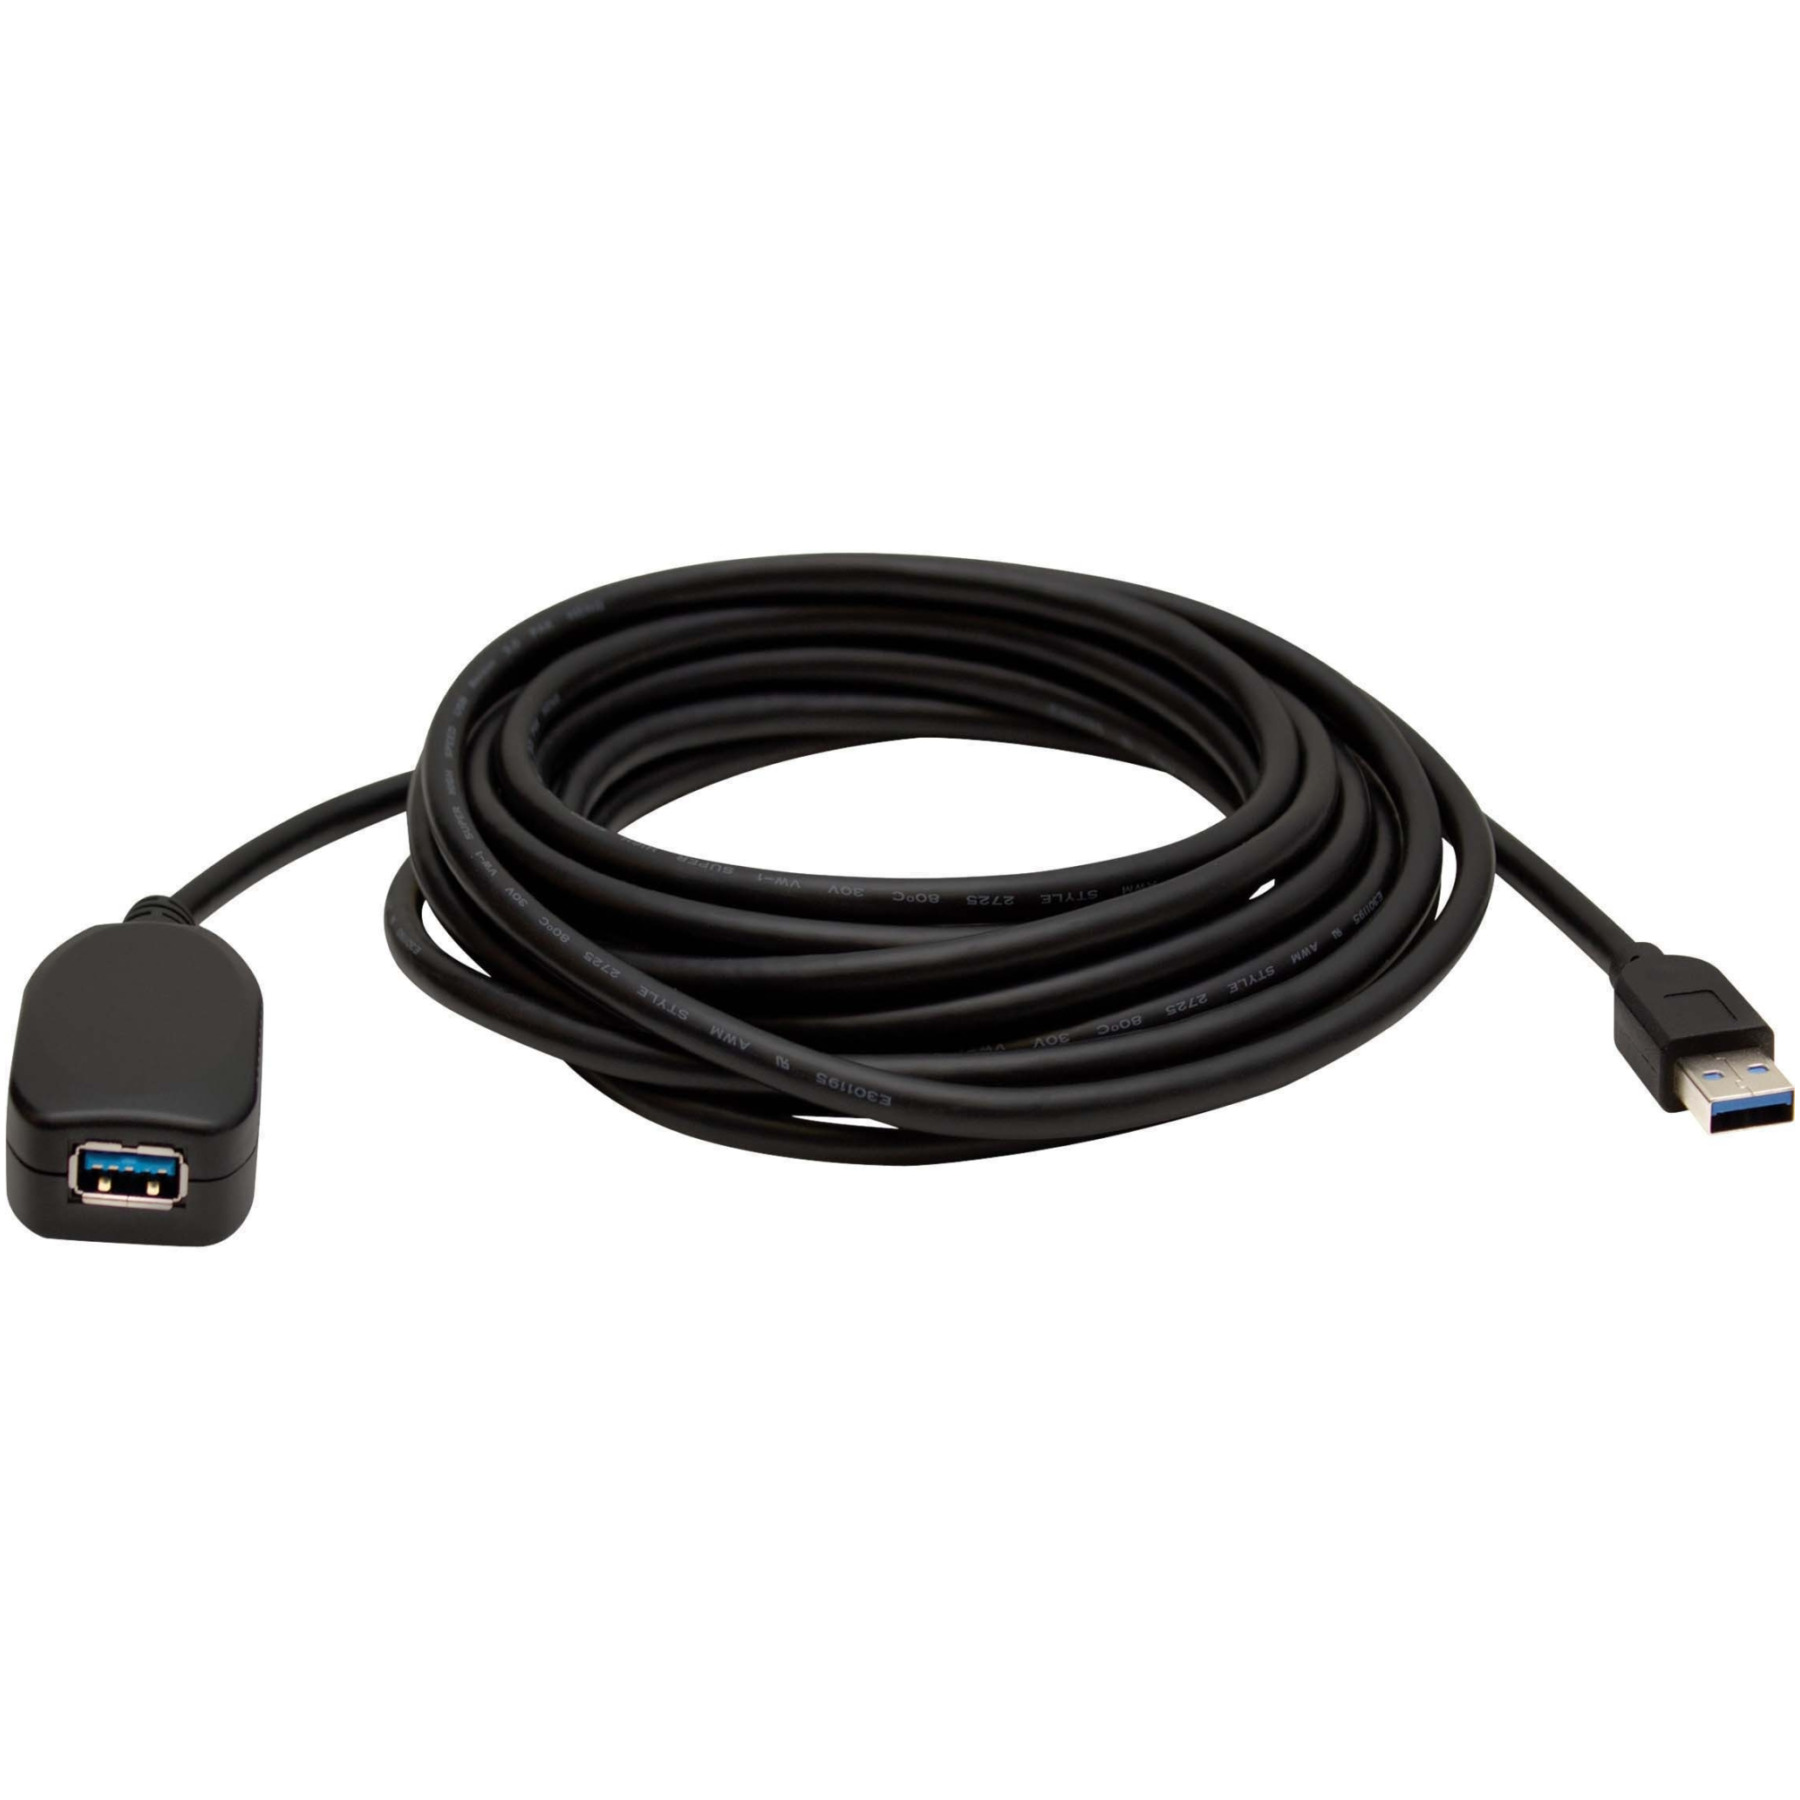 Cable USB tipo A macho/hembra de 5 mt